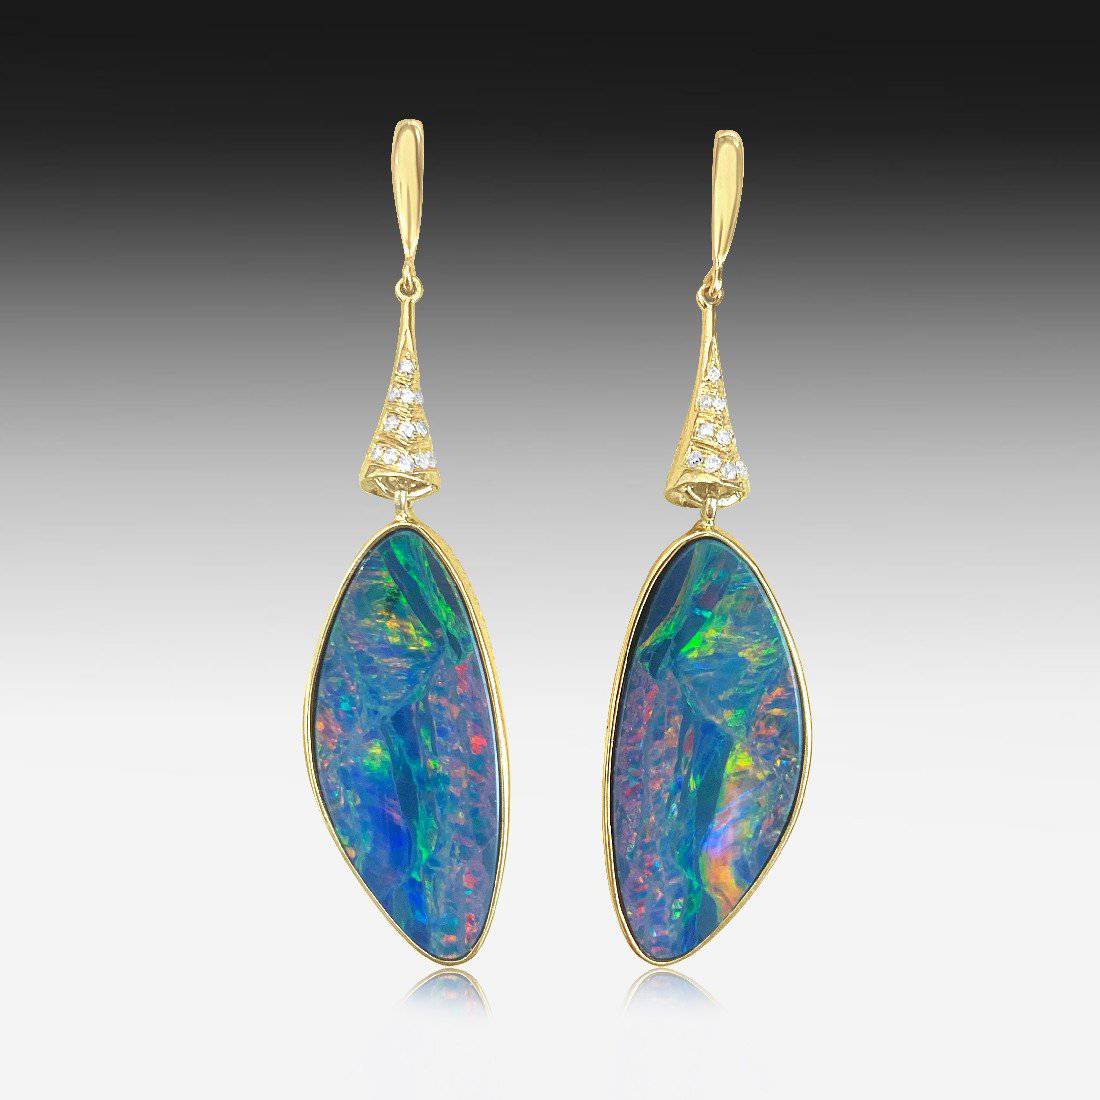 18kt Rose Gold Opal and Diamond earrings - Masterpiece Jewellery Opal & Gems Sydney Australia | Online Shop